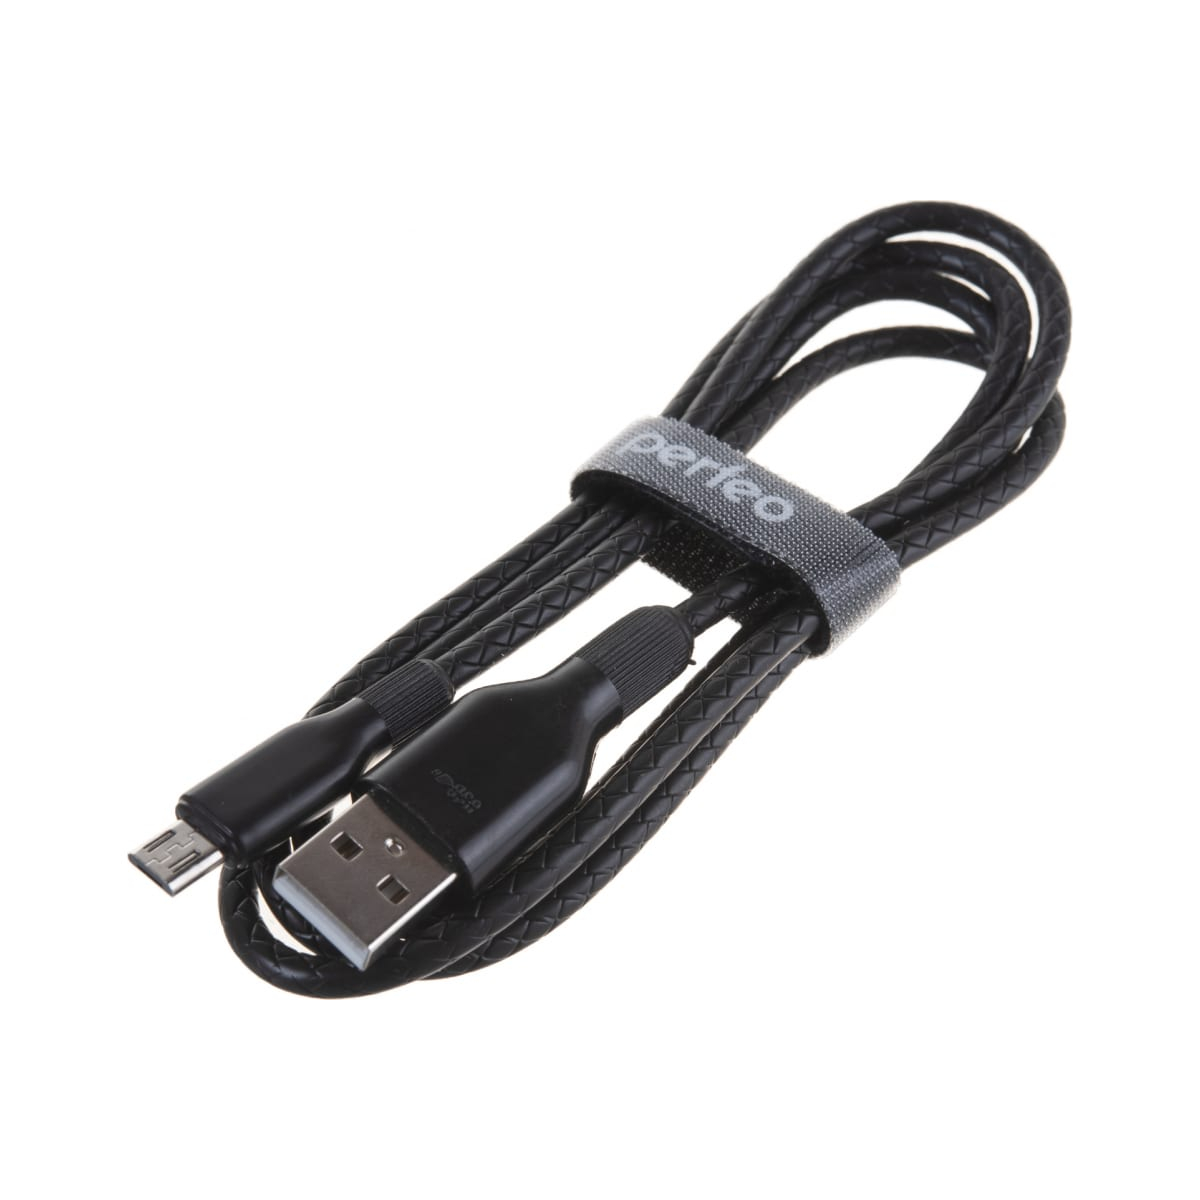 Кабель Perfeo U4807 USB 2.0 A вилка - Micro USB вилка 1 м black кабель ritmix micro usb usb 1 метр белый rcc 312